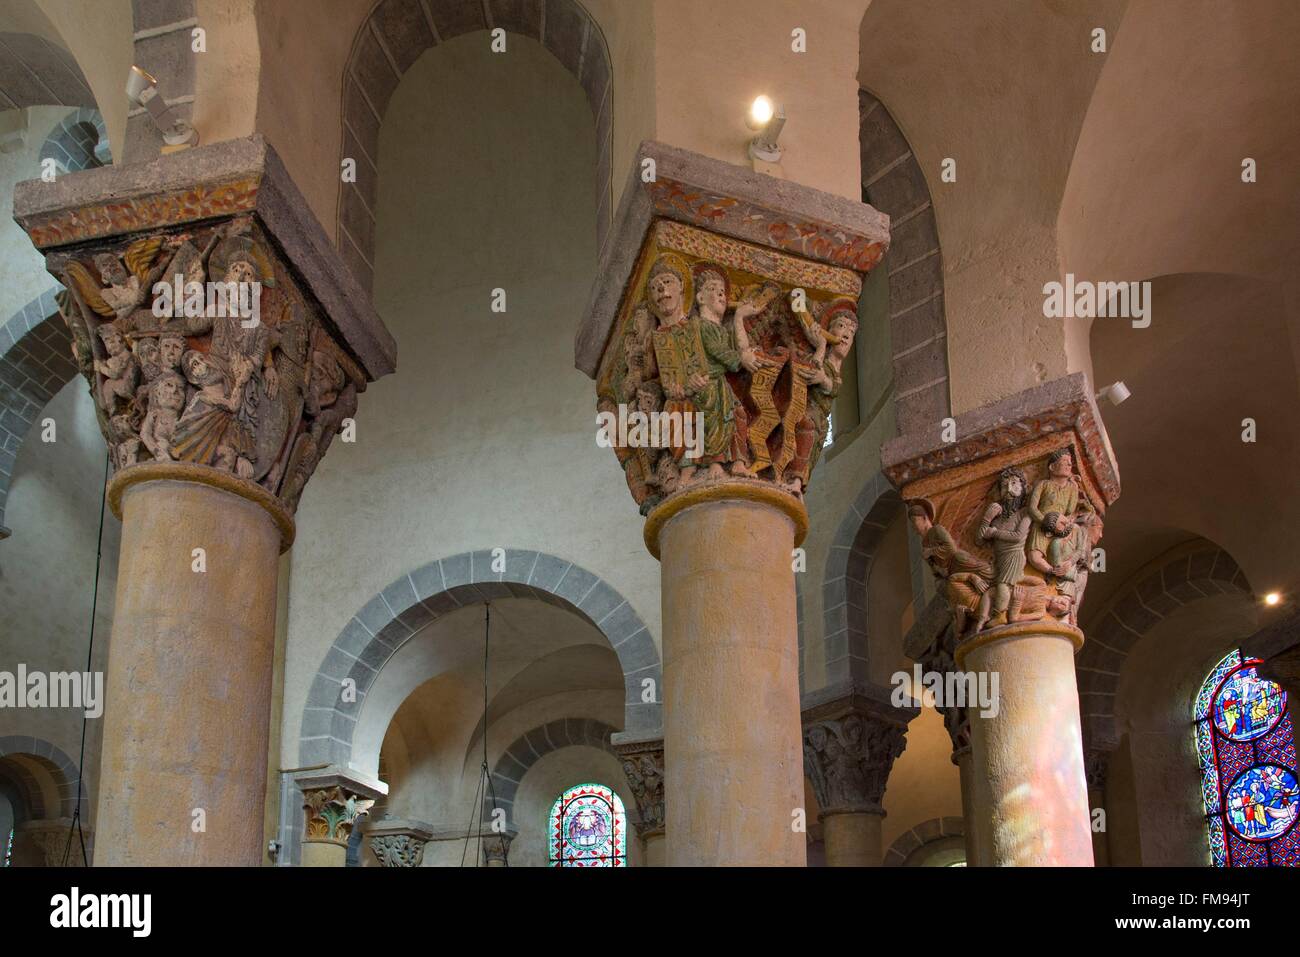 France, Puy de Dome, Saint Nectaire, église romane du xiie siècle, des colonnes avec des sculptures exceptionnelles Banque D'Images